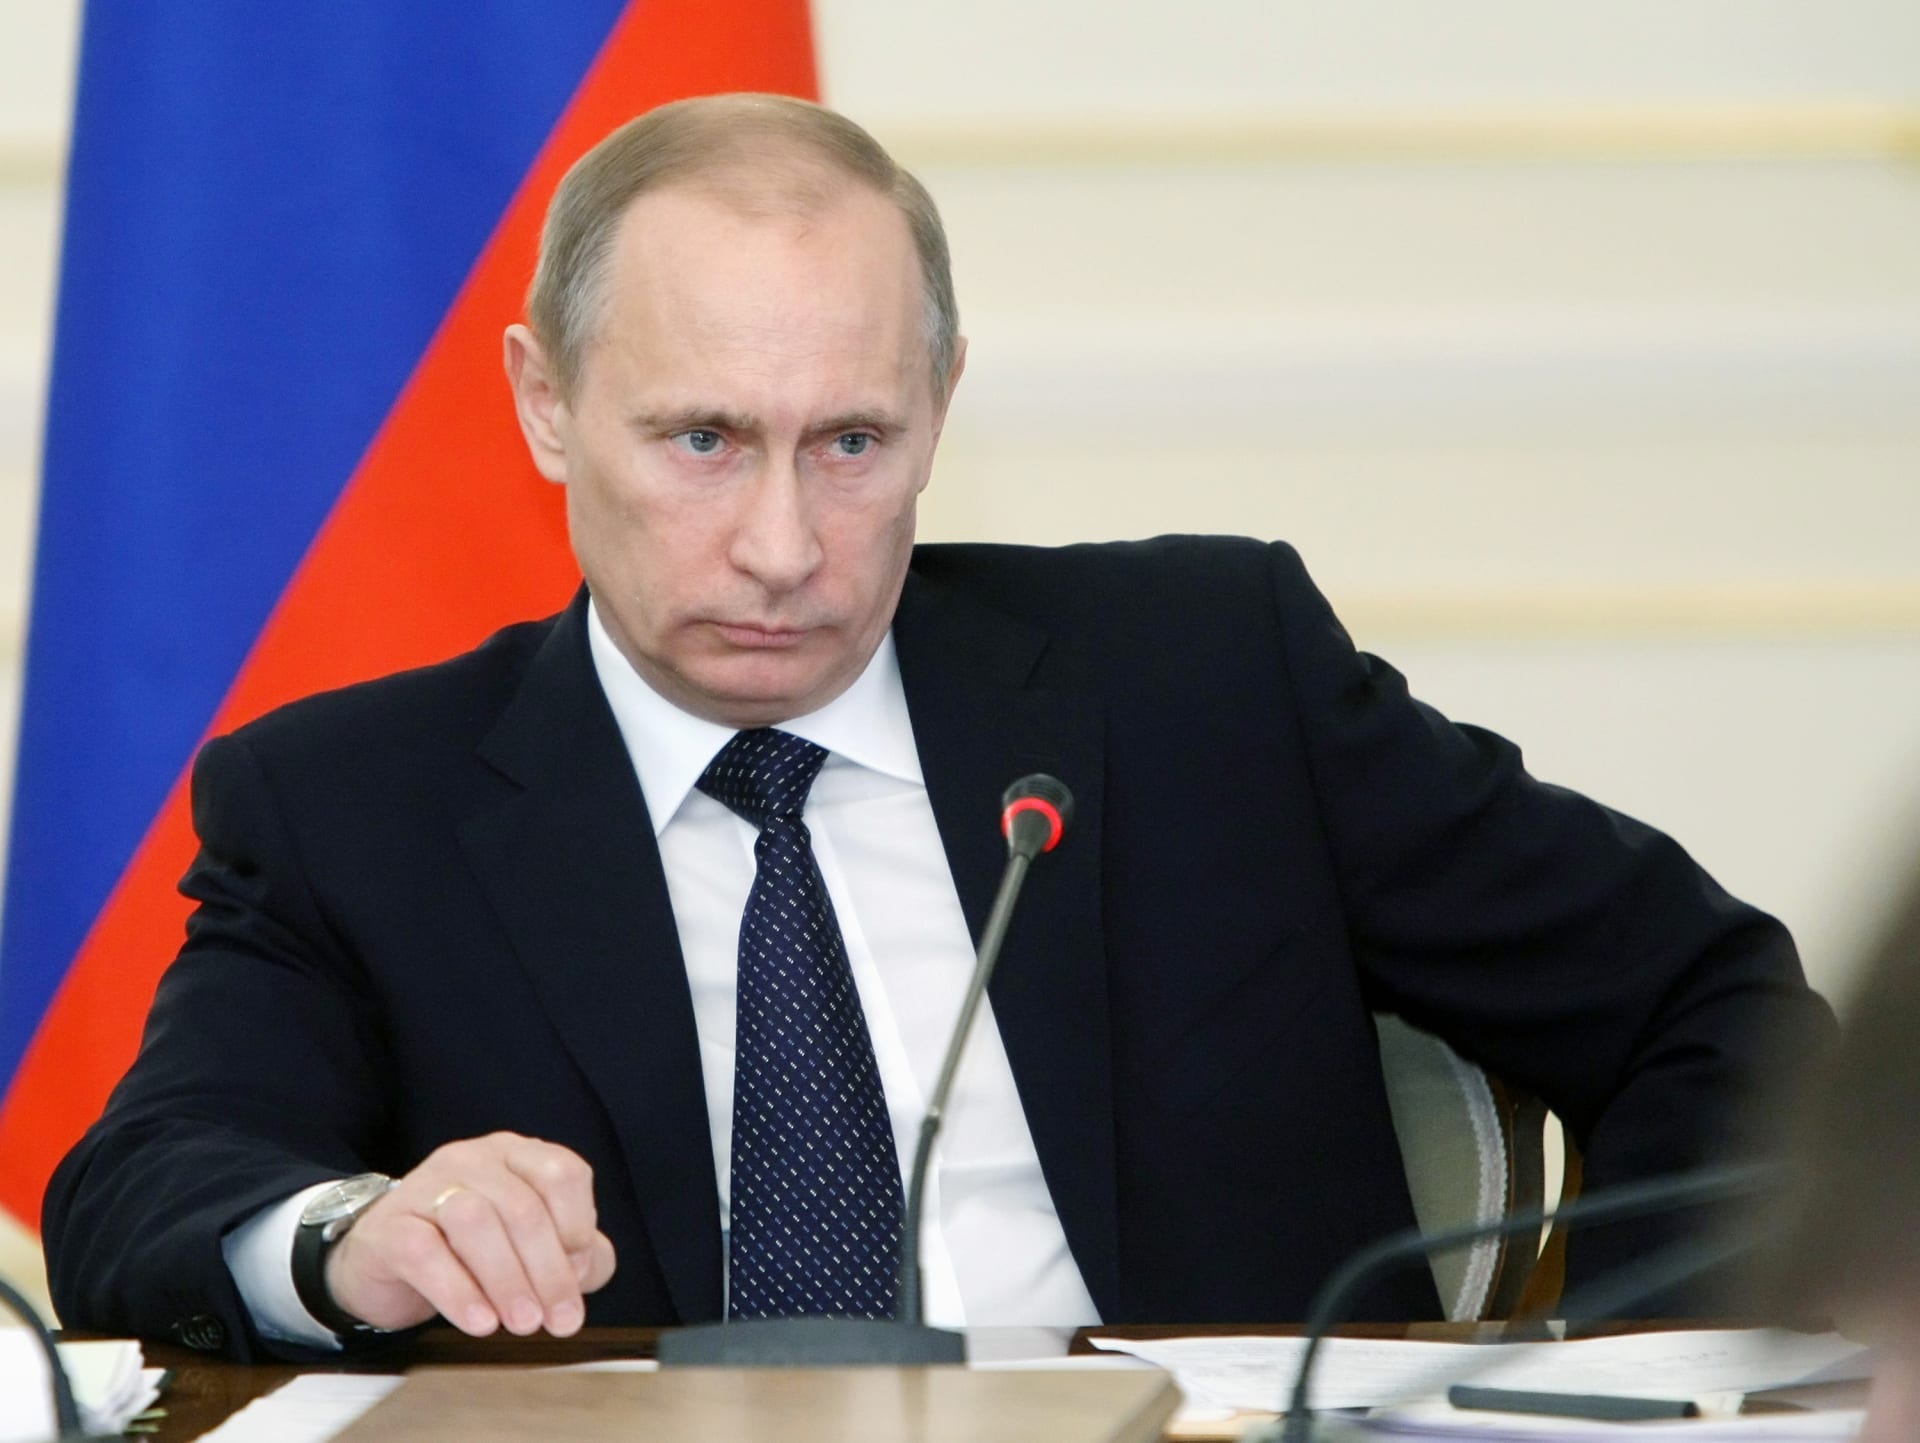 بوتين يقر استراتيجية تسمح للبحرية الروسية باستخدام الأسلحة النووية